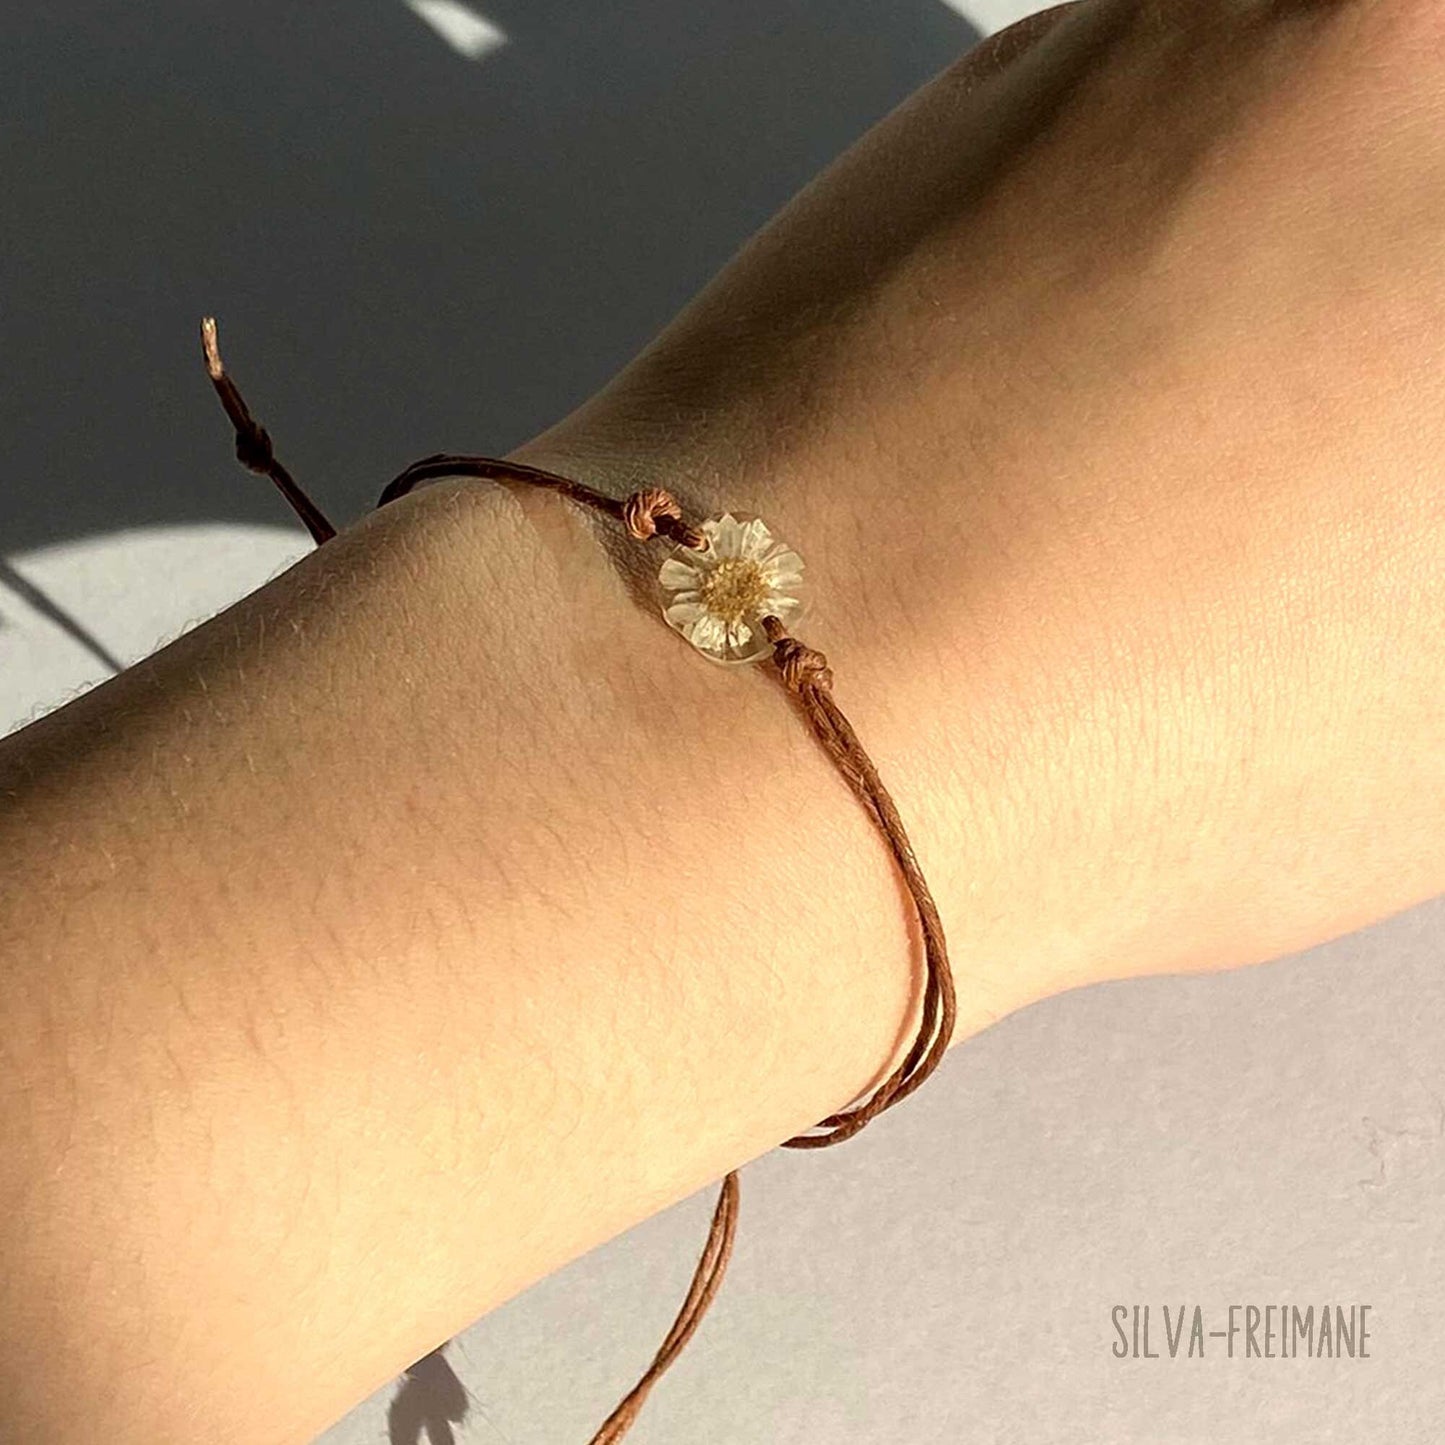 Small Off-White Flower String bracelet, Friendship bracelet with handmade flower charm, minimal bracelet.